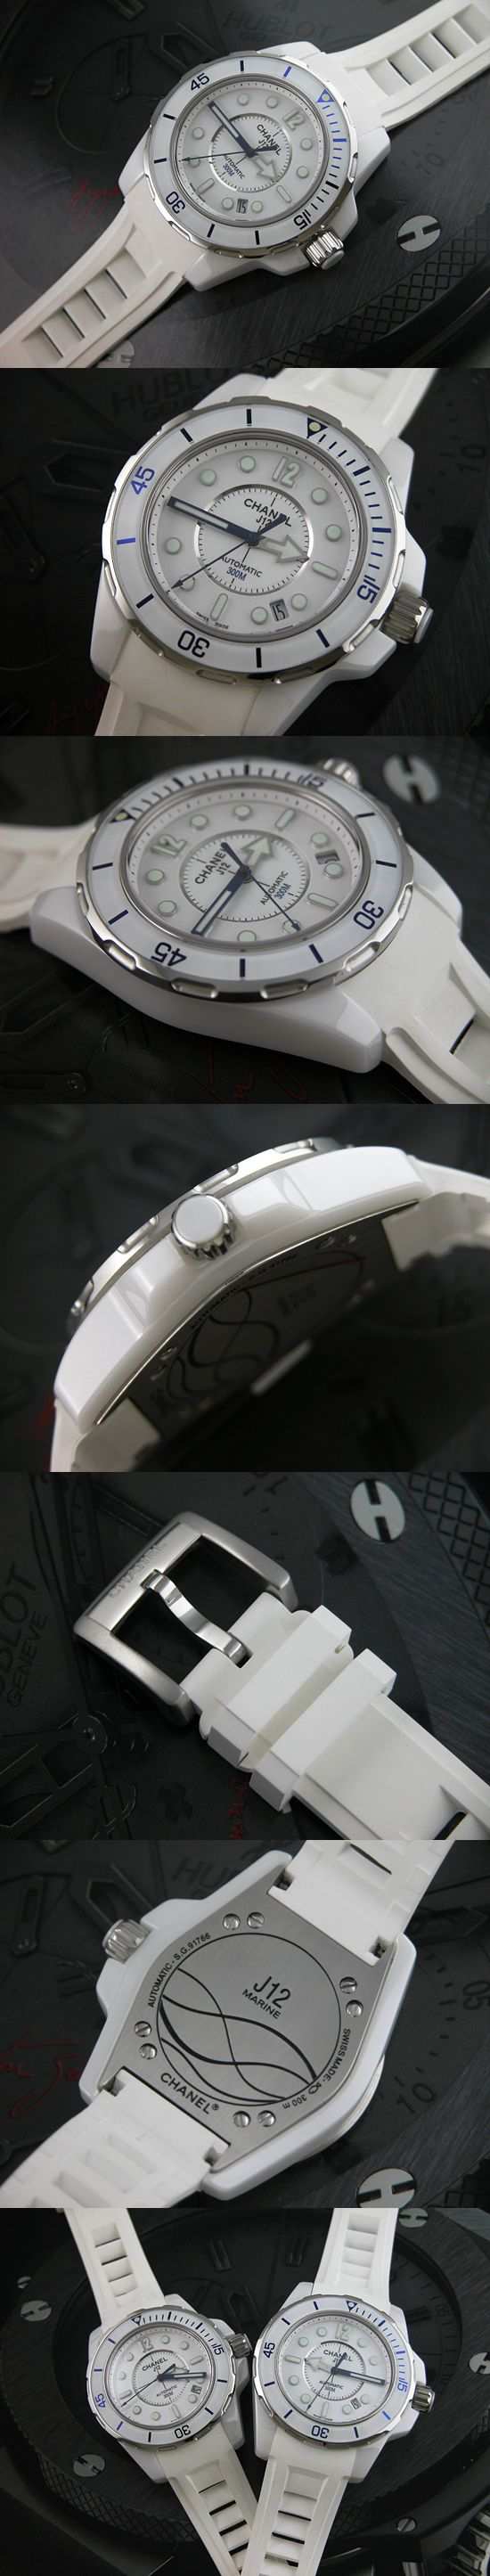 おしゃれなブランド時計がシャネル-CHANEL-H2560-bf-J12マリン-男性用を提供します.